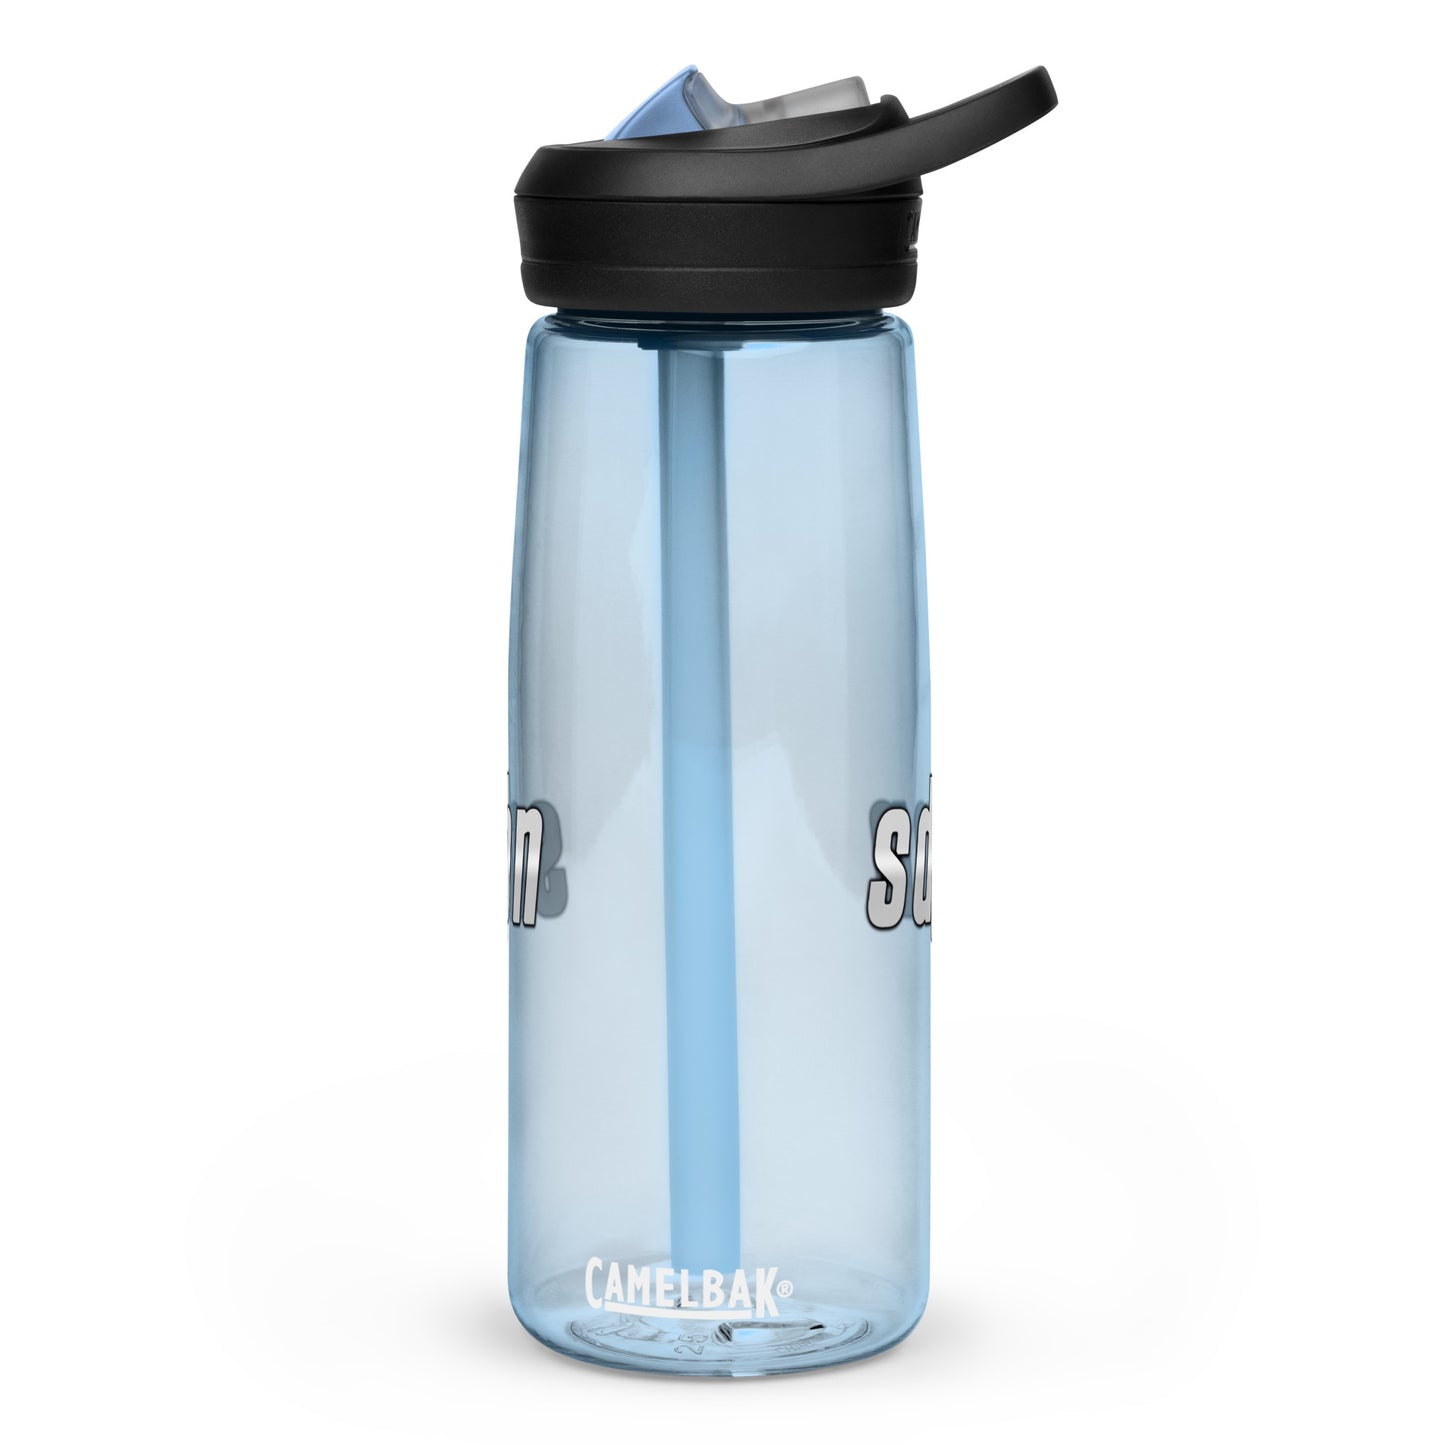 sdpn Logo Water Bottle